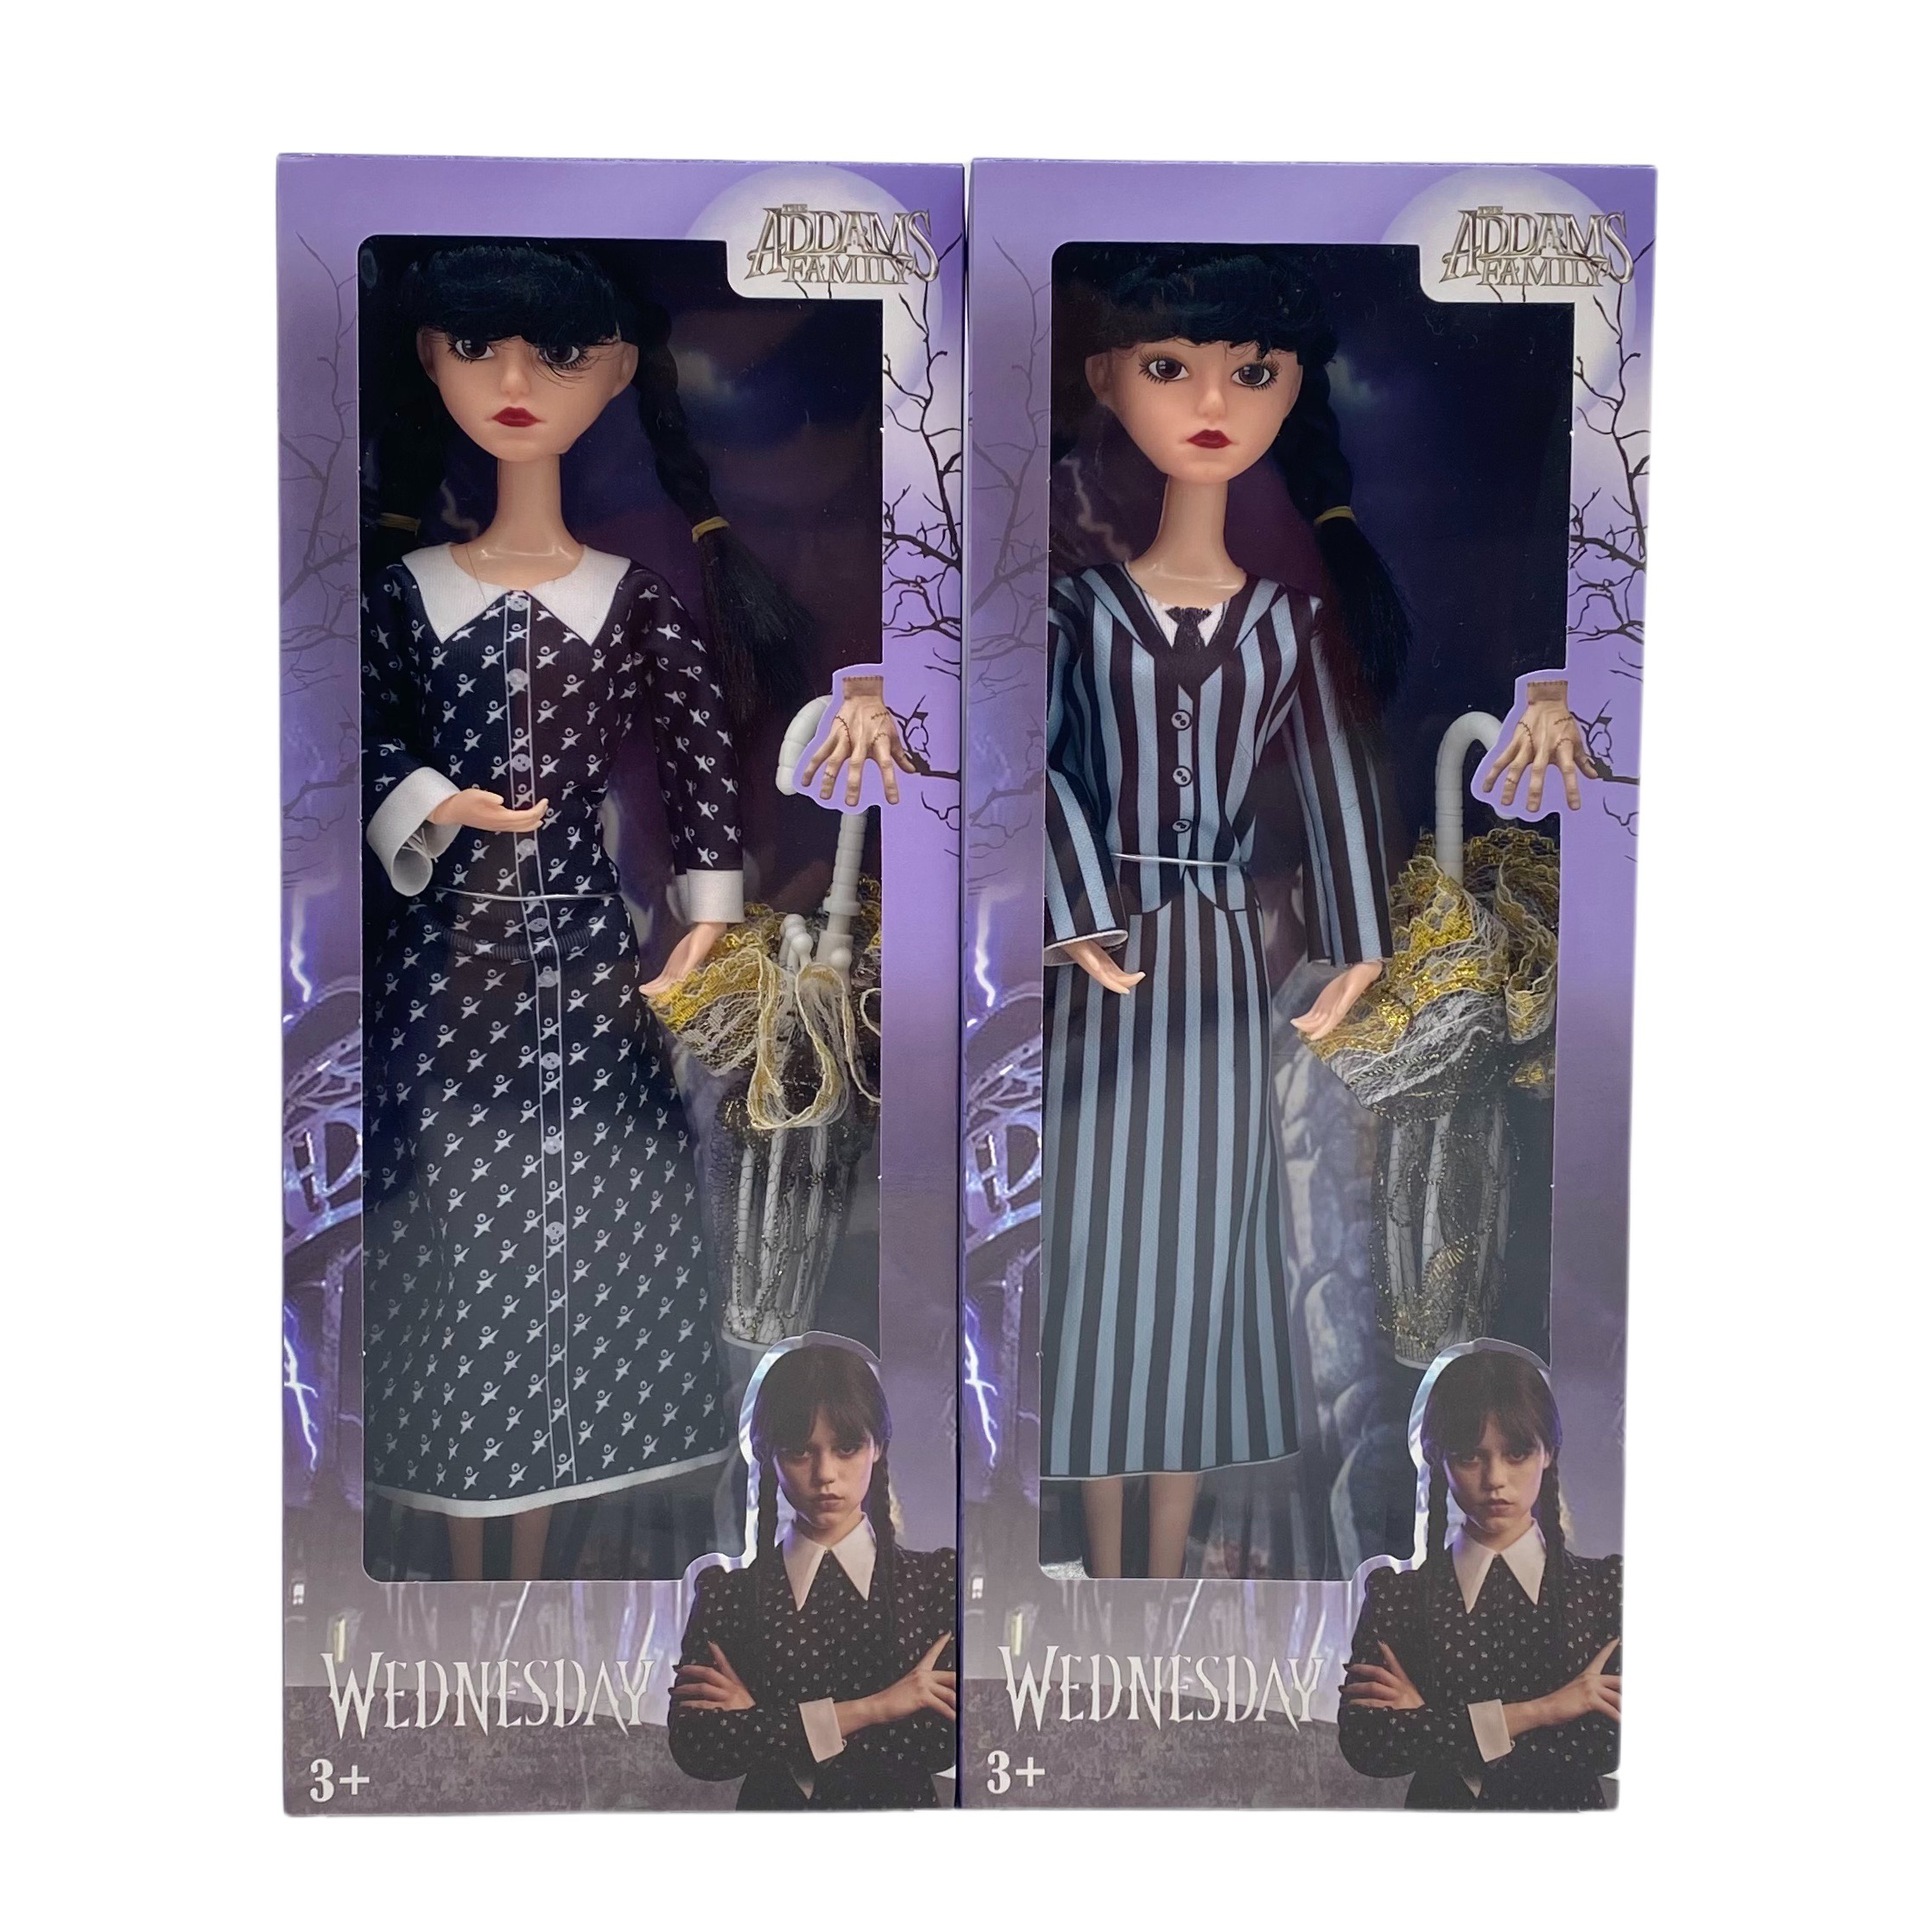 Loofamy Mercoledì Bambole Addams, Bambola di plastica della famiglia Addams, 11,5 pollici, Abito a righe a maniche corte, Regali di compleanno per i fan delle ragazze dei bambini